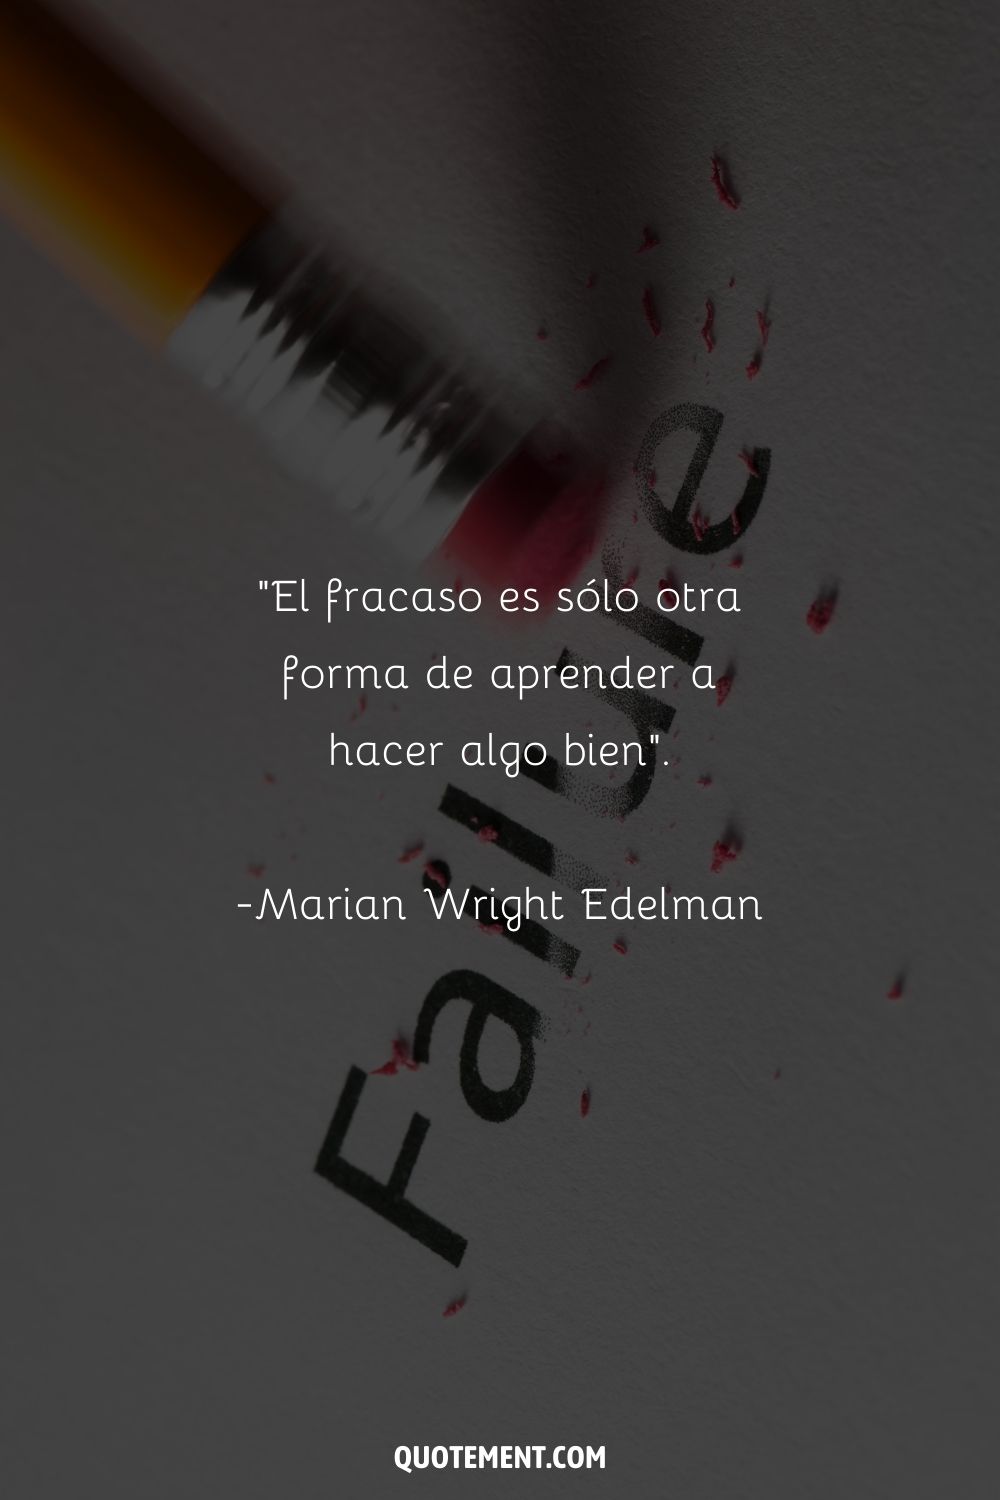 "El fracaso no es más que otra forma de aprender a hacer algo bien". - Marian Wright Edelman